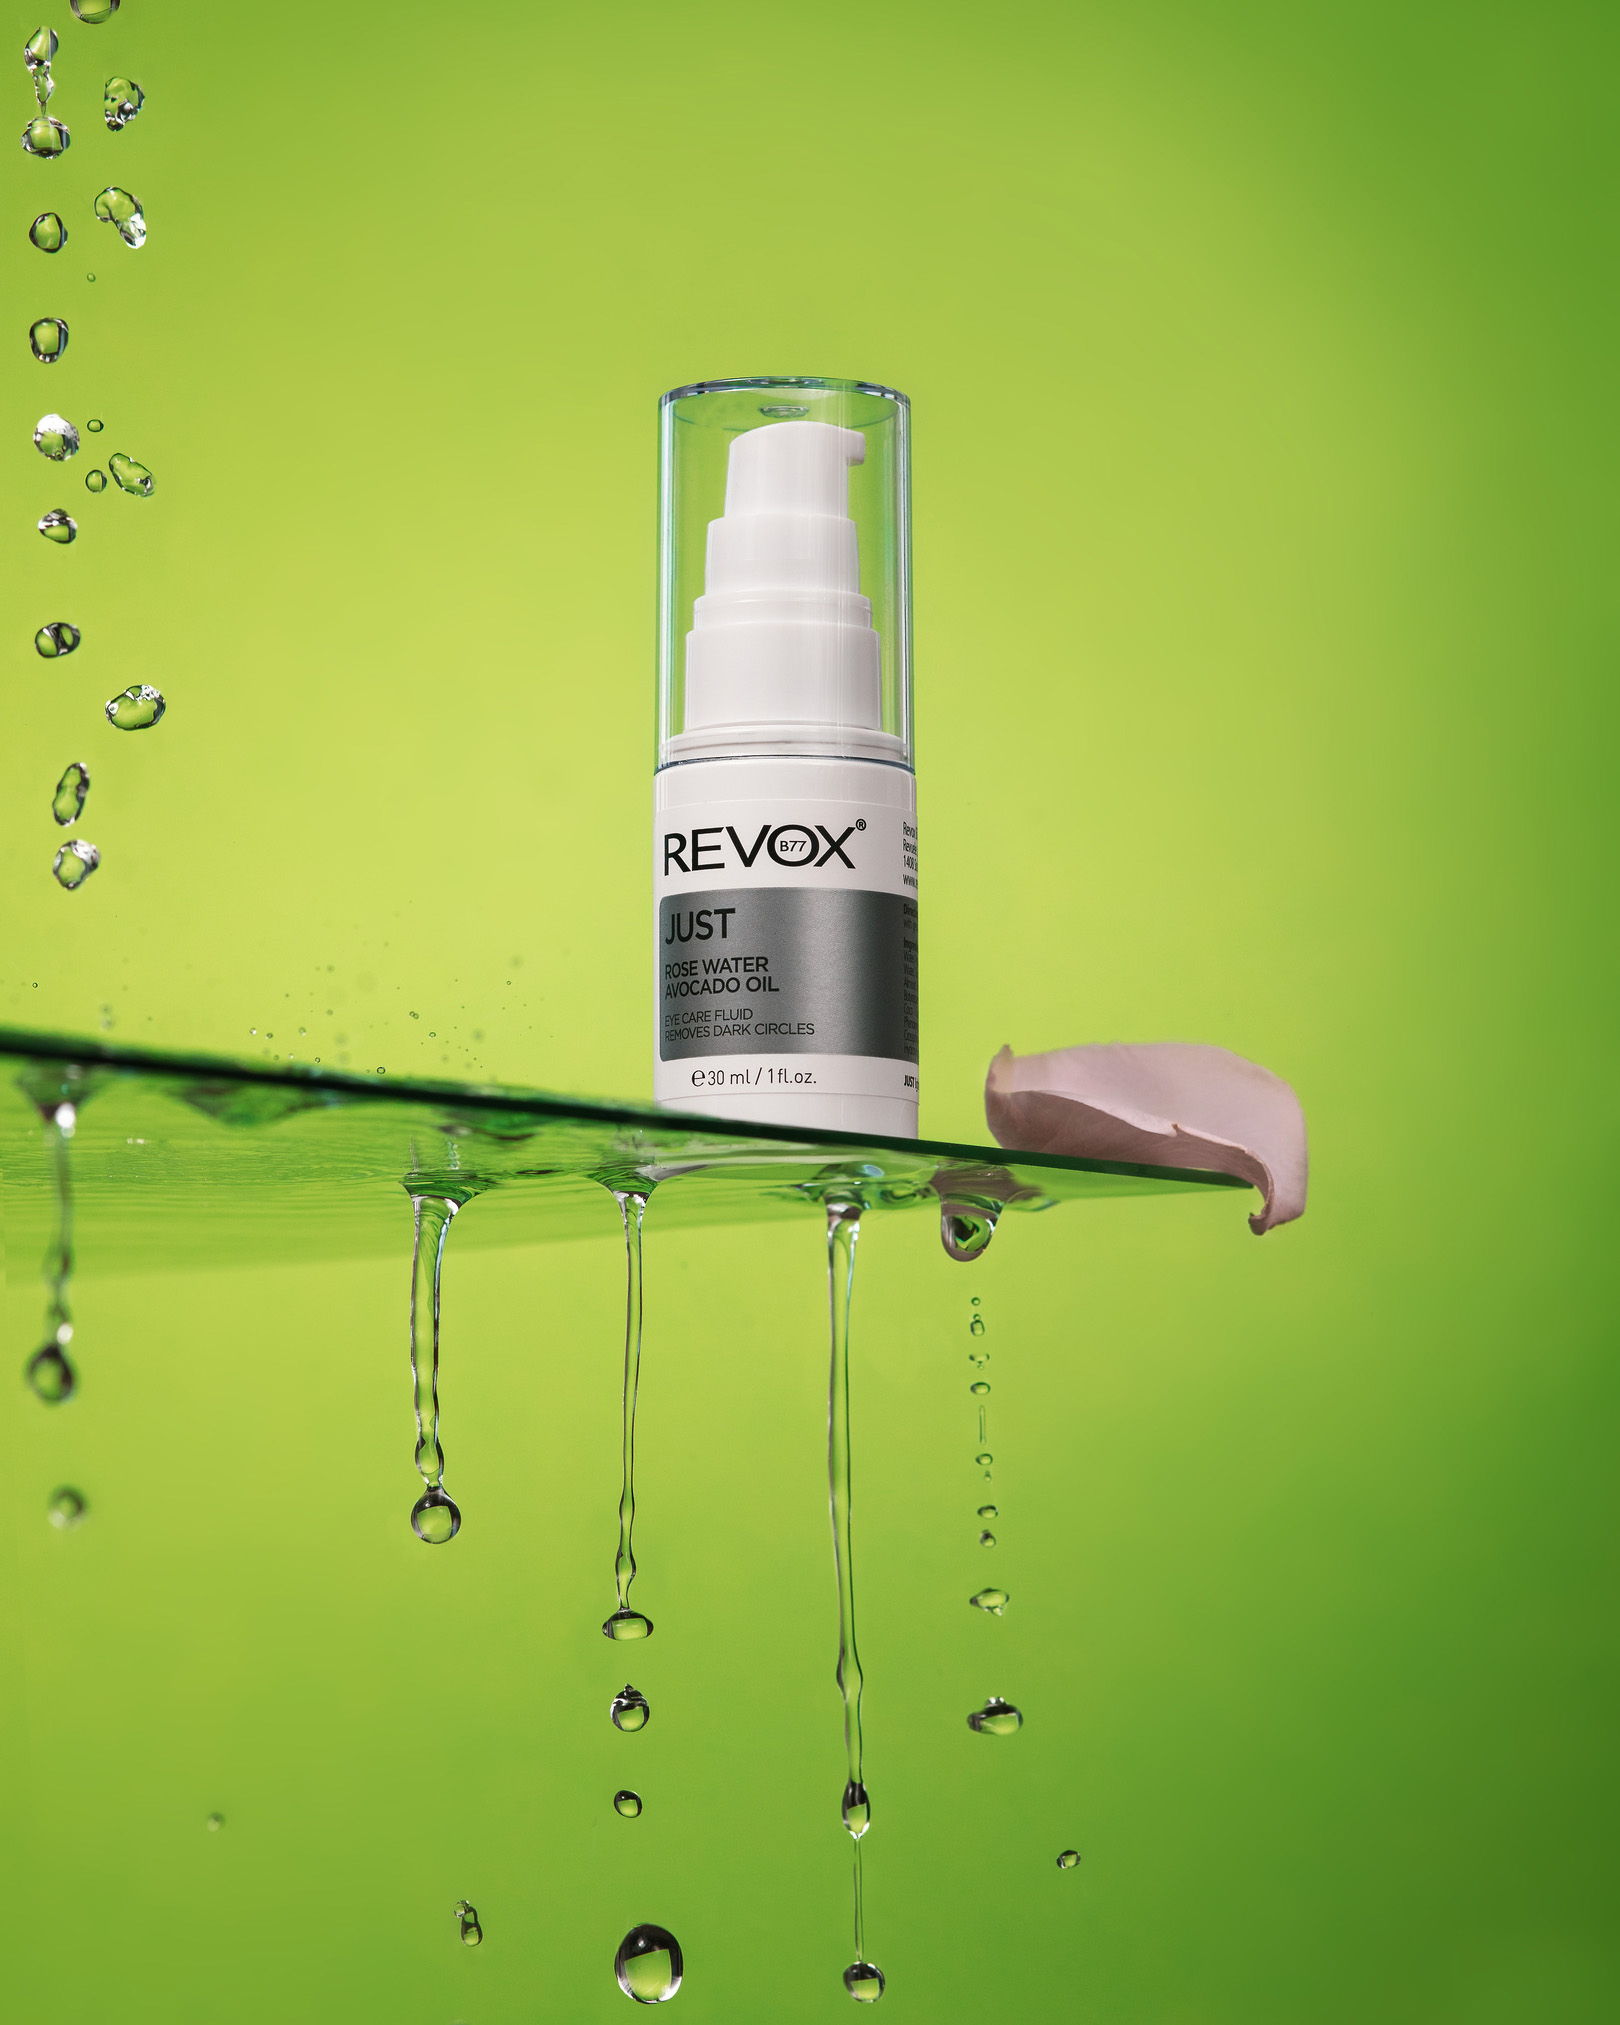 Revox - Just Rose Water Avocado Oil. Бутилка е на ръба на чаша във вода и мехурчета.